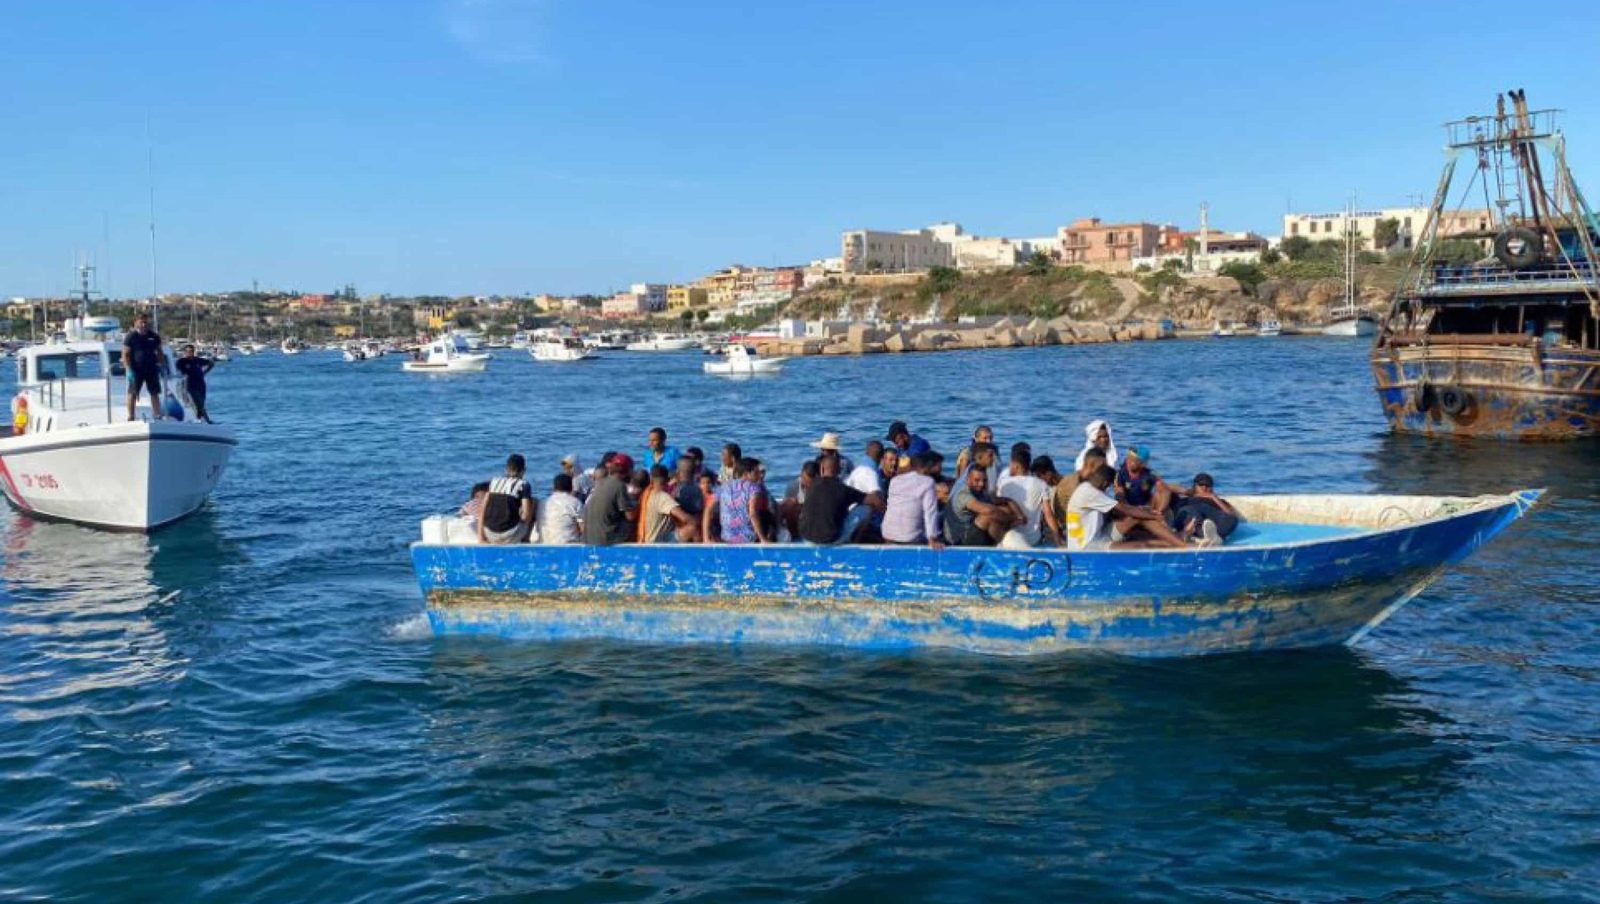 Nuovi sbarchi a Lampedusa, l’hotspot dell’isola al collasso. Il racconto: “Migranti dispersi dopo un naufragio”